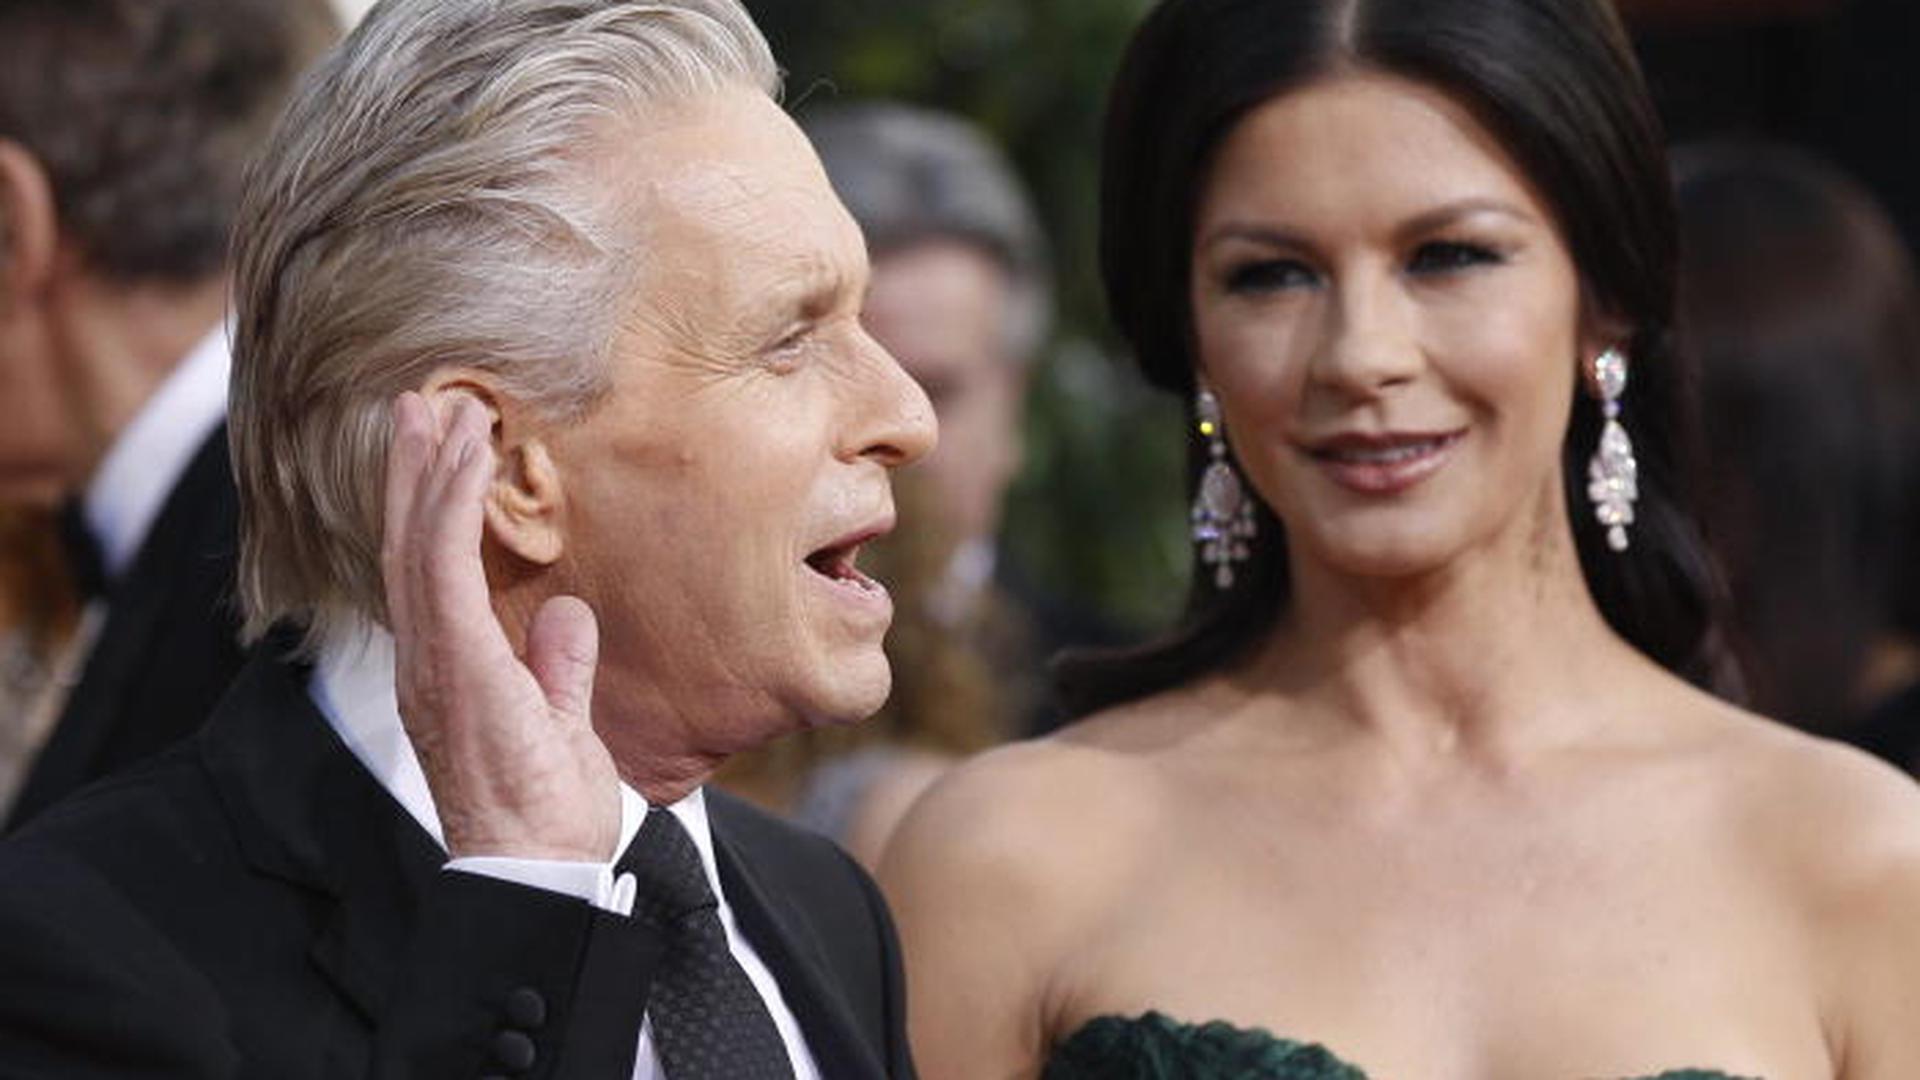 Michael Douglas, de 68 anos, é casado com a actriz Catherine Zeta-Jones, de 43 anos